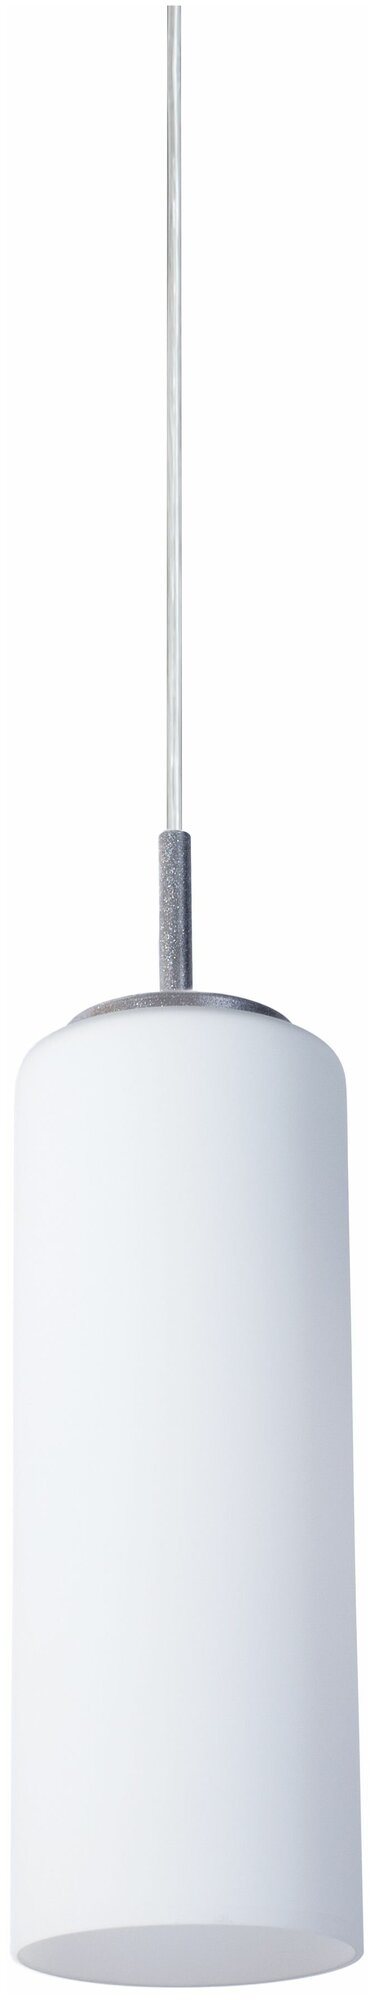 Подвесной светильник ARTE LAMP - фото №11